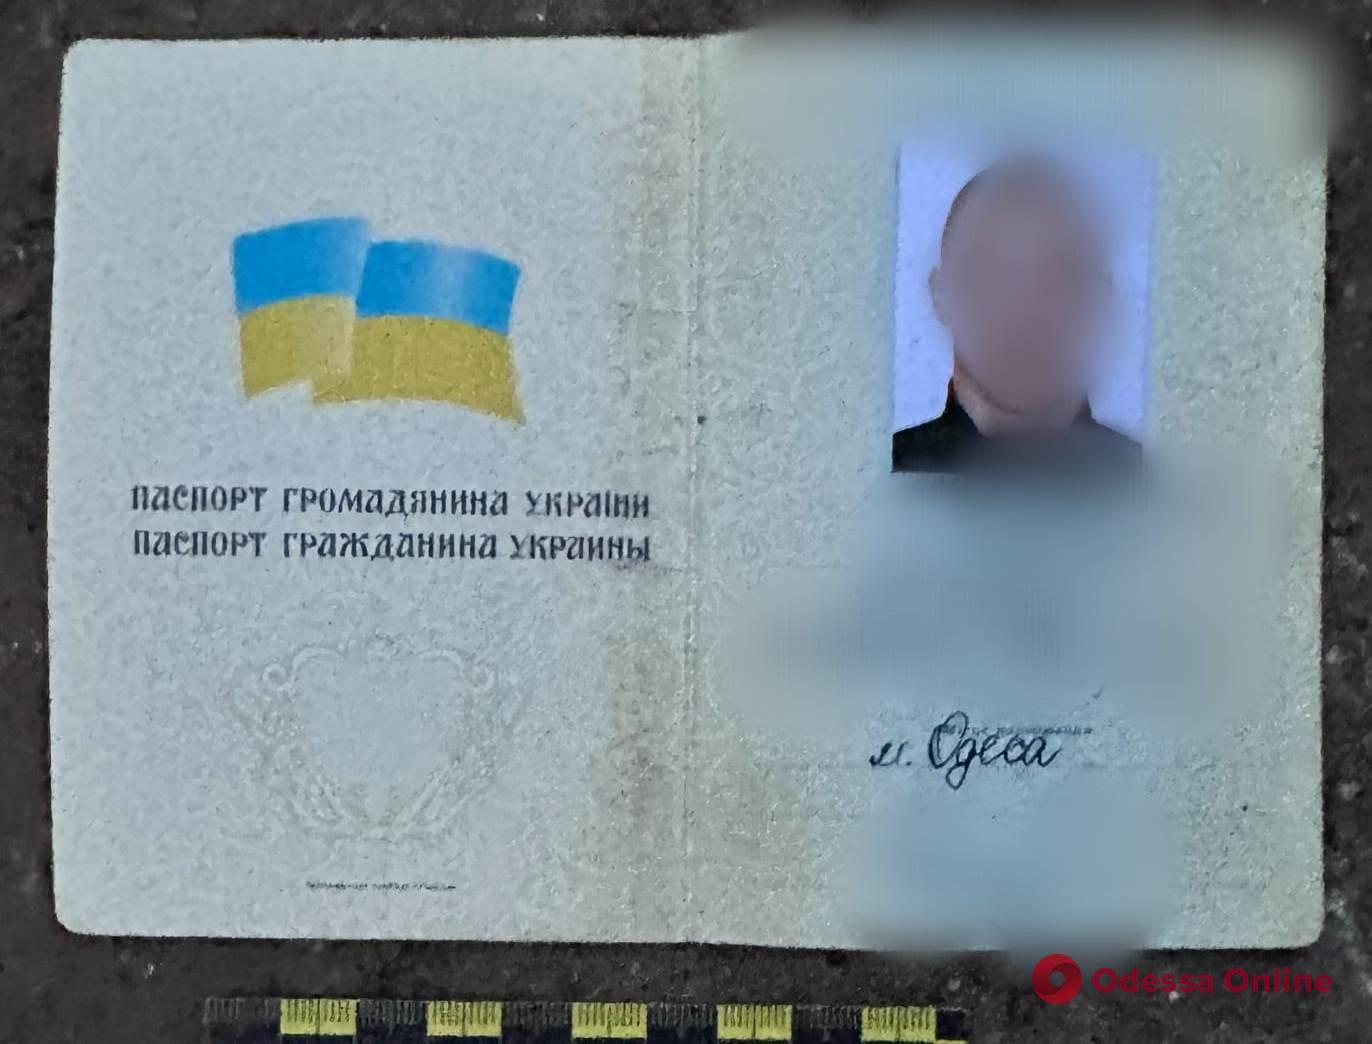 В Одессе разоблачили херсонца с чужим паспортом и холодным оружием